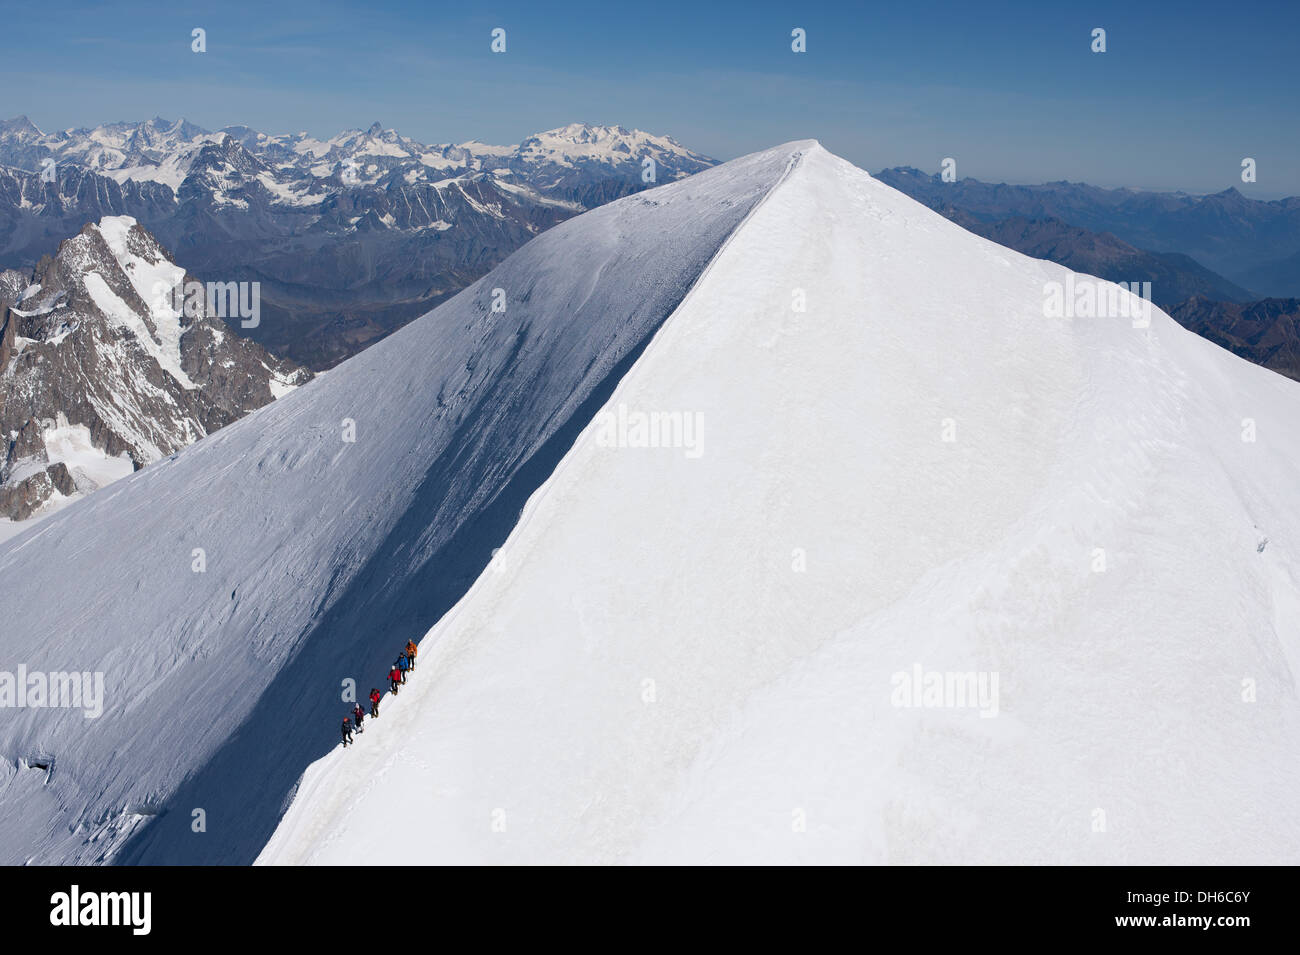 LUFTAUFNAHME. Mont Blanc, der höchste Gipfel Westeuropas (4810m). 6 Alpinisten wandern auf dem Grat hinunter. Chamonix, Haute-Savoie, Frankreich. Stockfoto